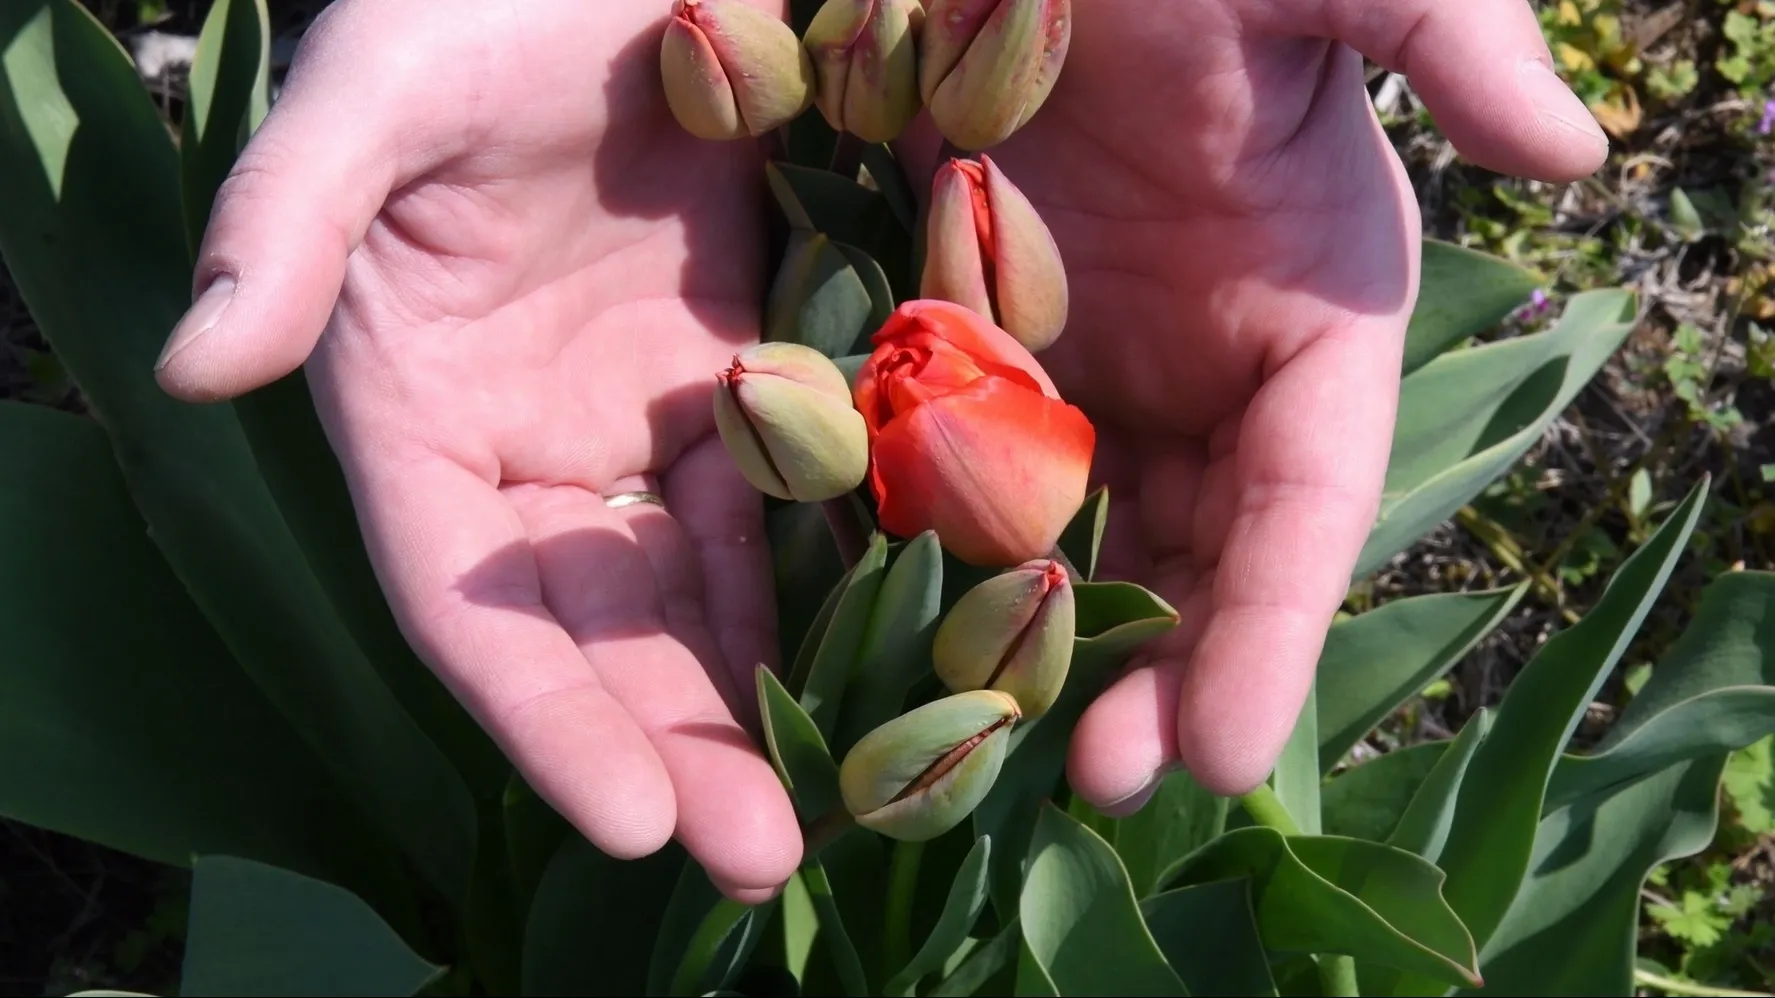 Салехардские цветоводы вырастят к празднику 4000 тюльпанов. Фото: Ninelro/Shutterstock/Fotodom